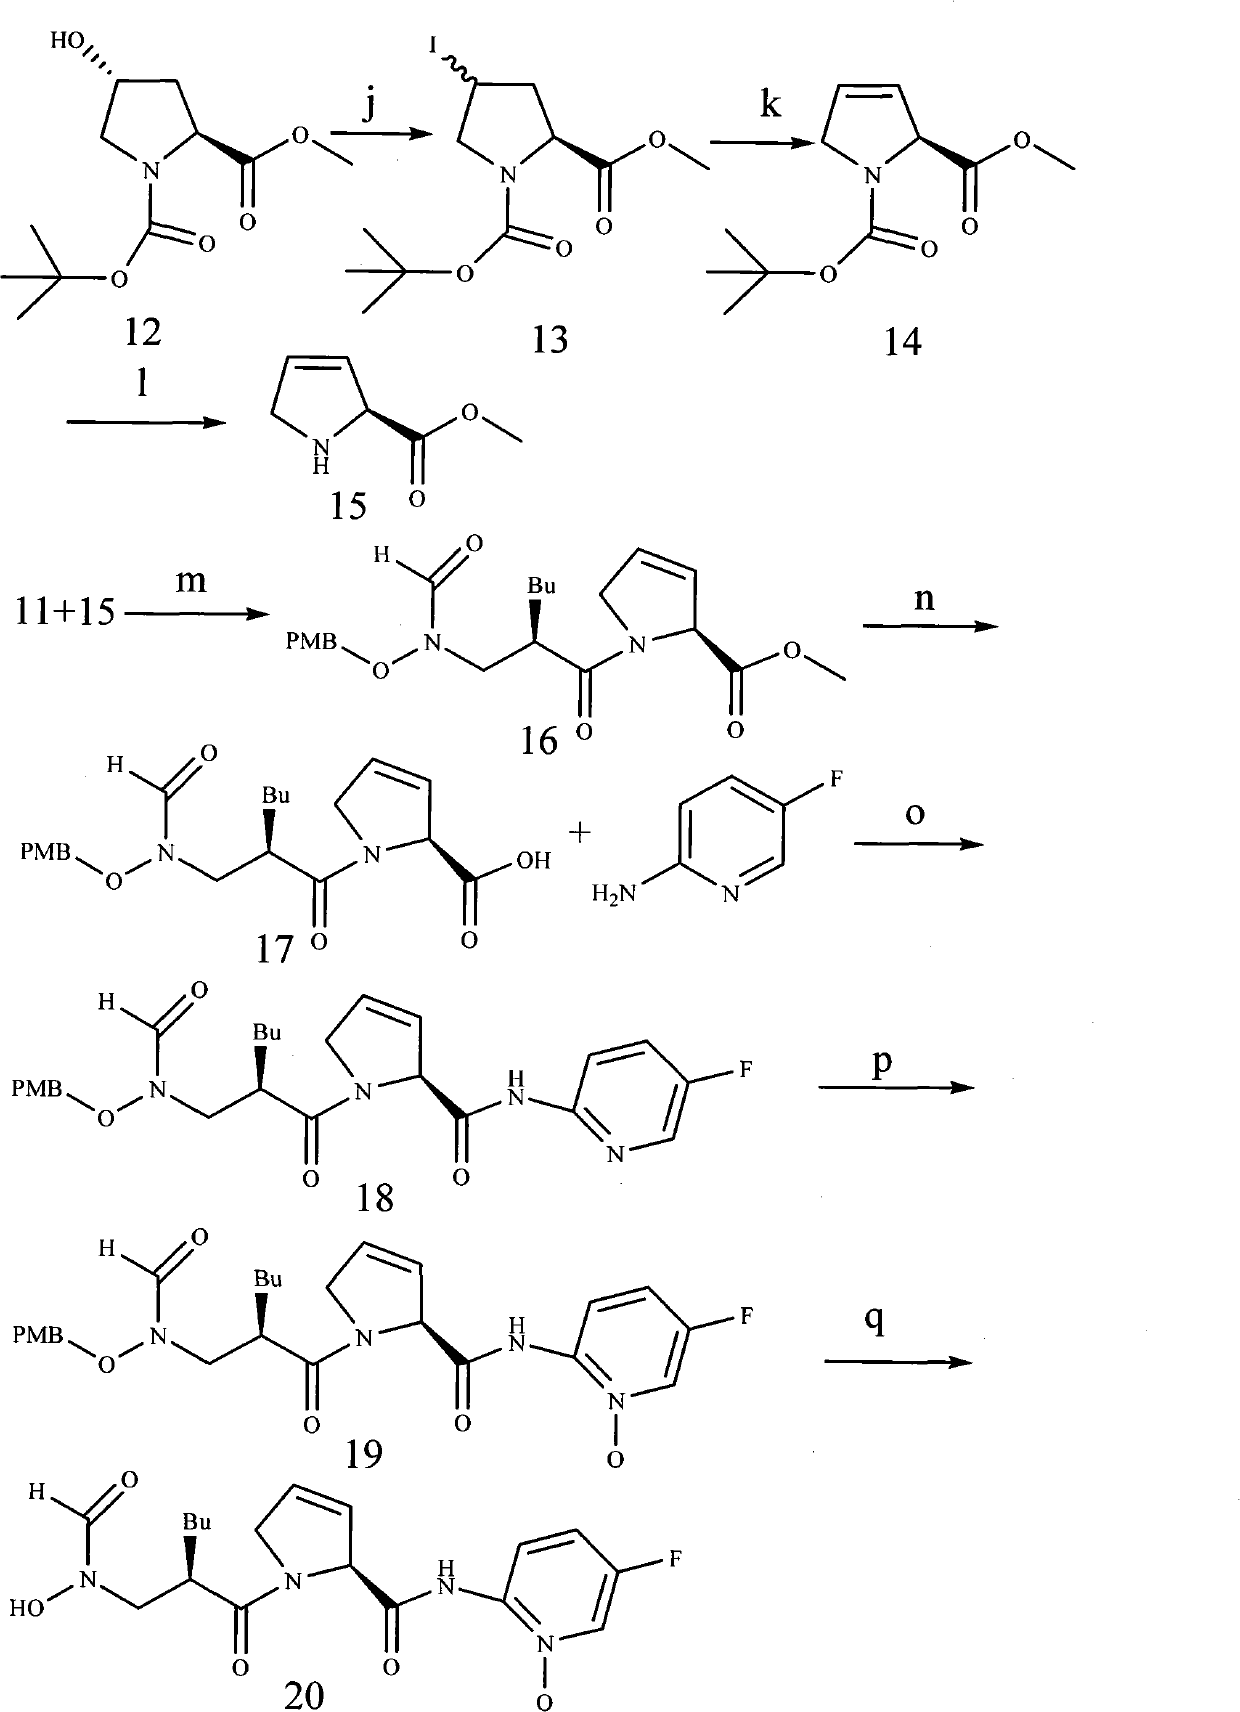 Peptide deformylase inhibitor containing 2, 5-dihydropyrrole and synthesizing method